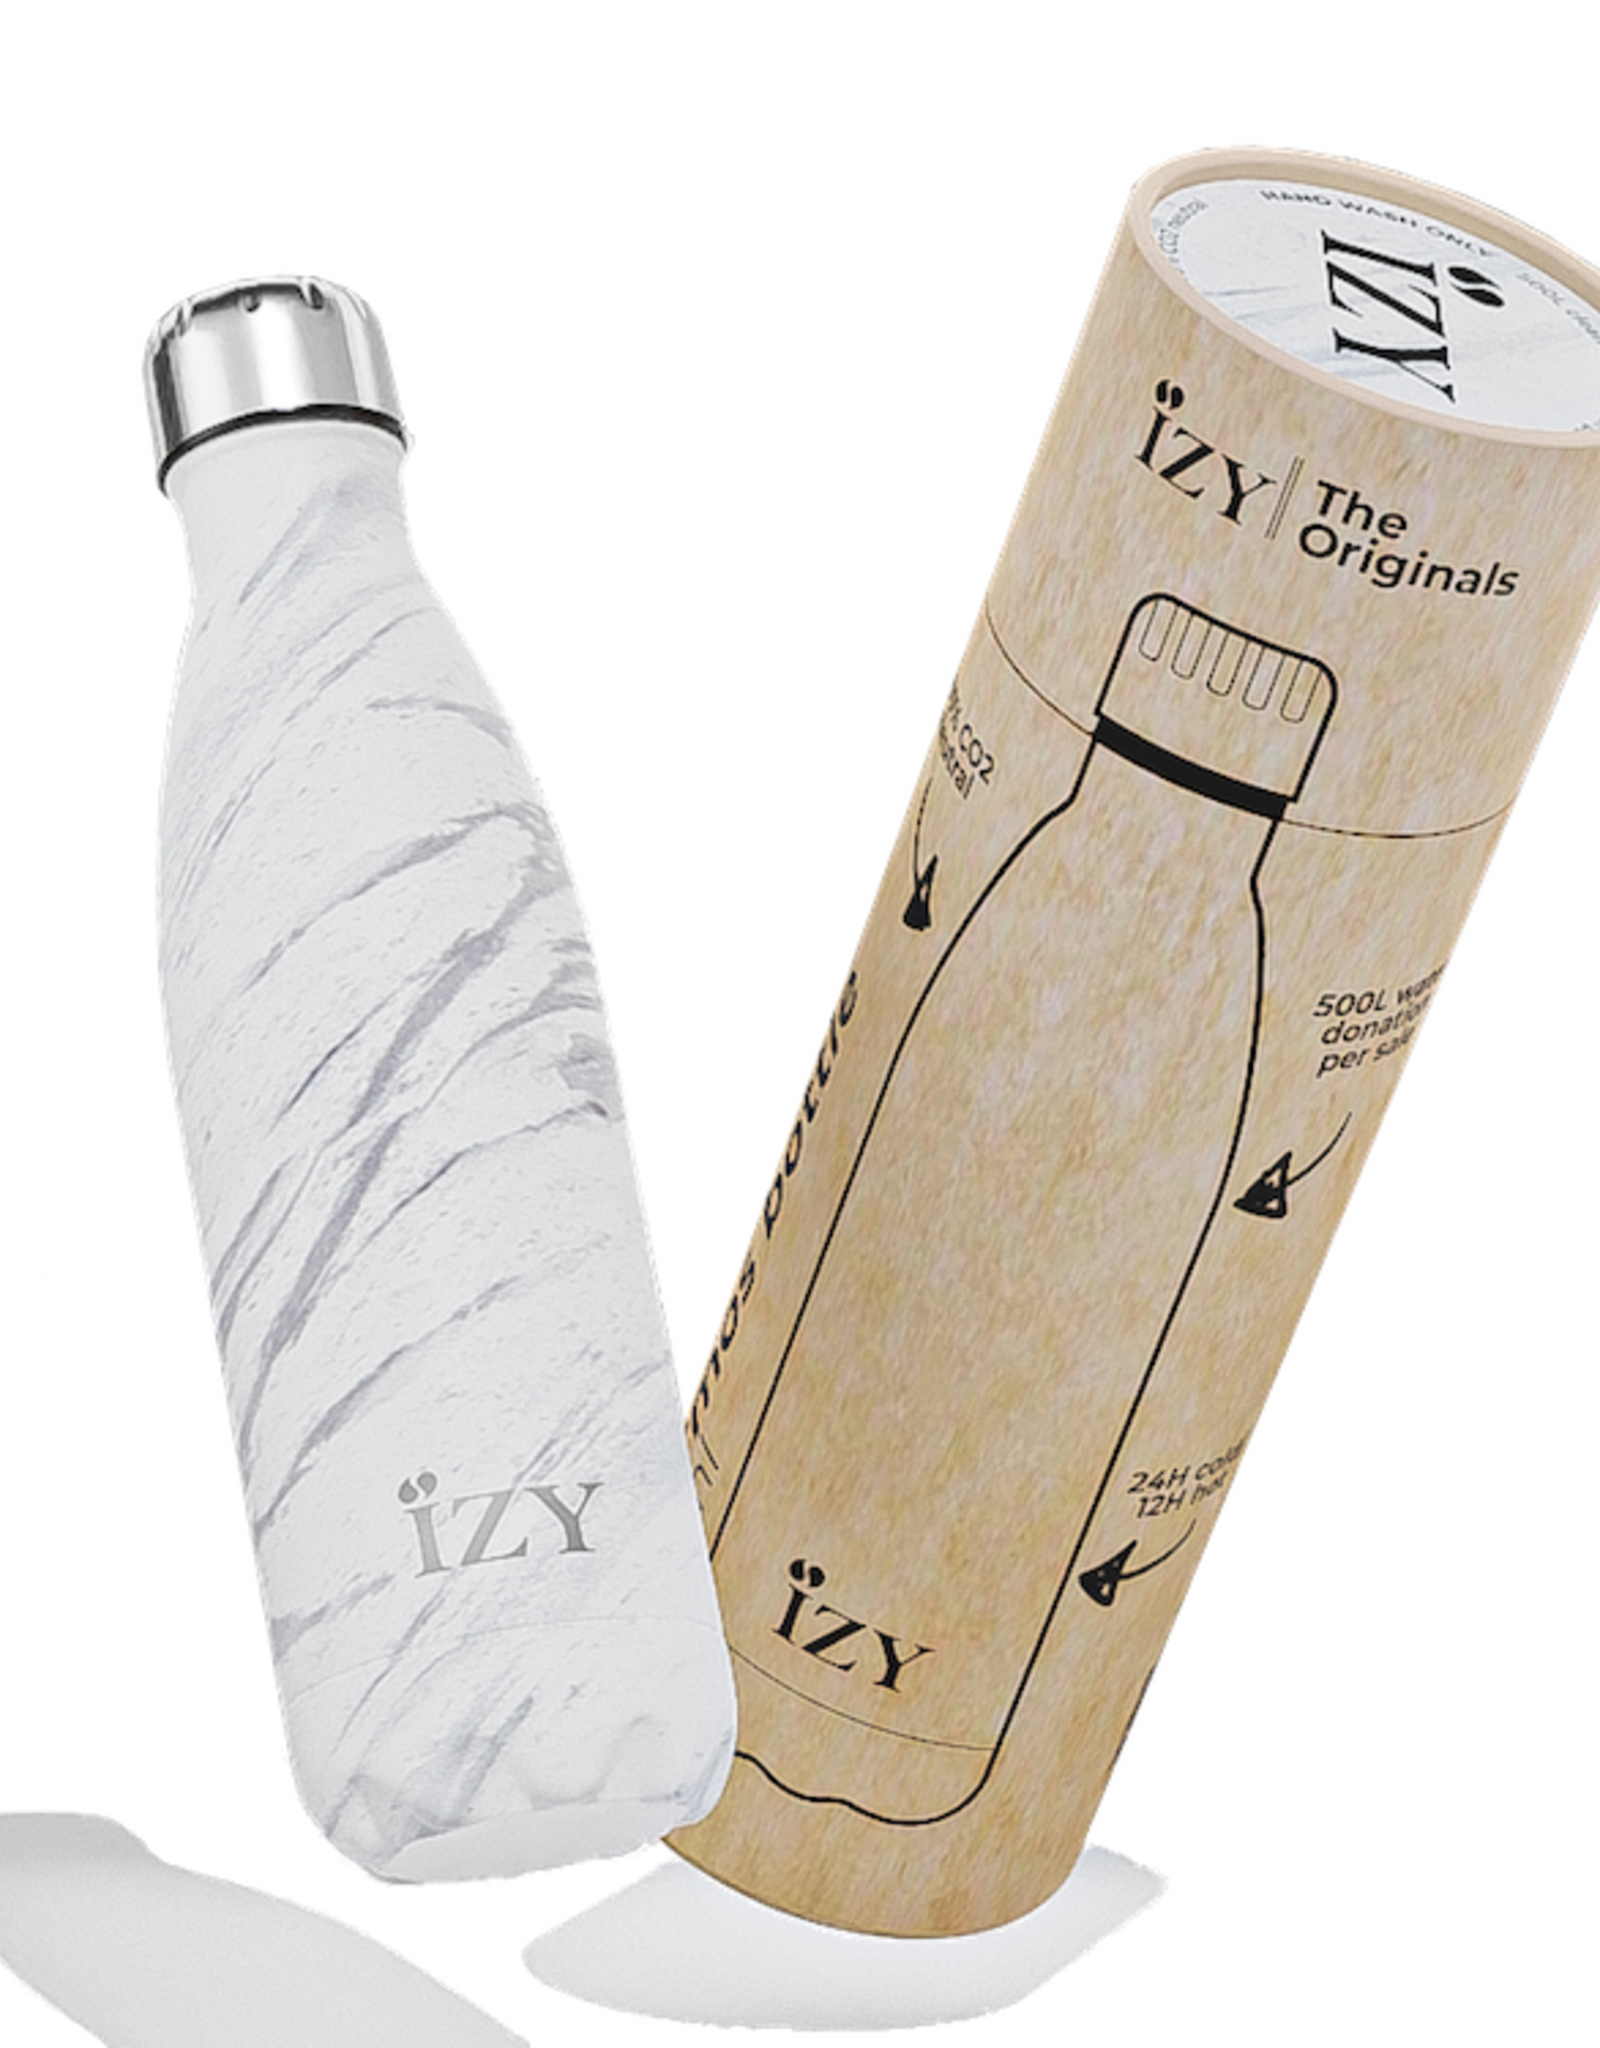 IZY Bottles Thermosfles 500ml Marmer wit - IZY Bottles